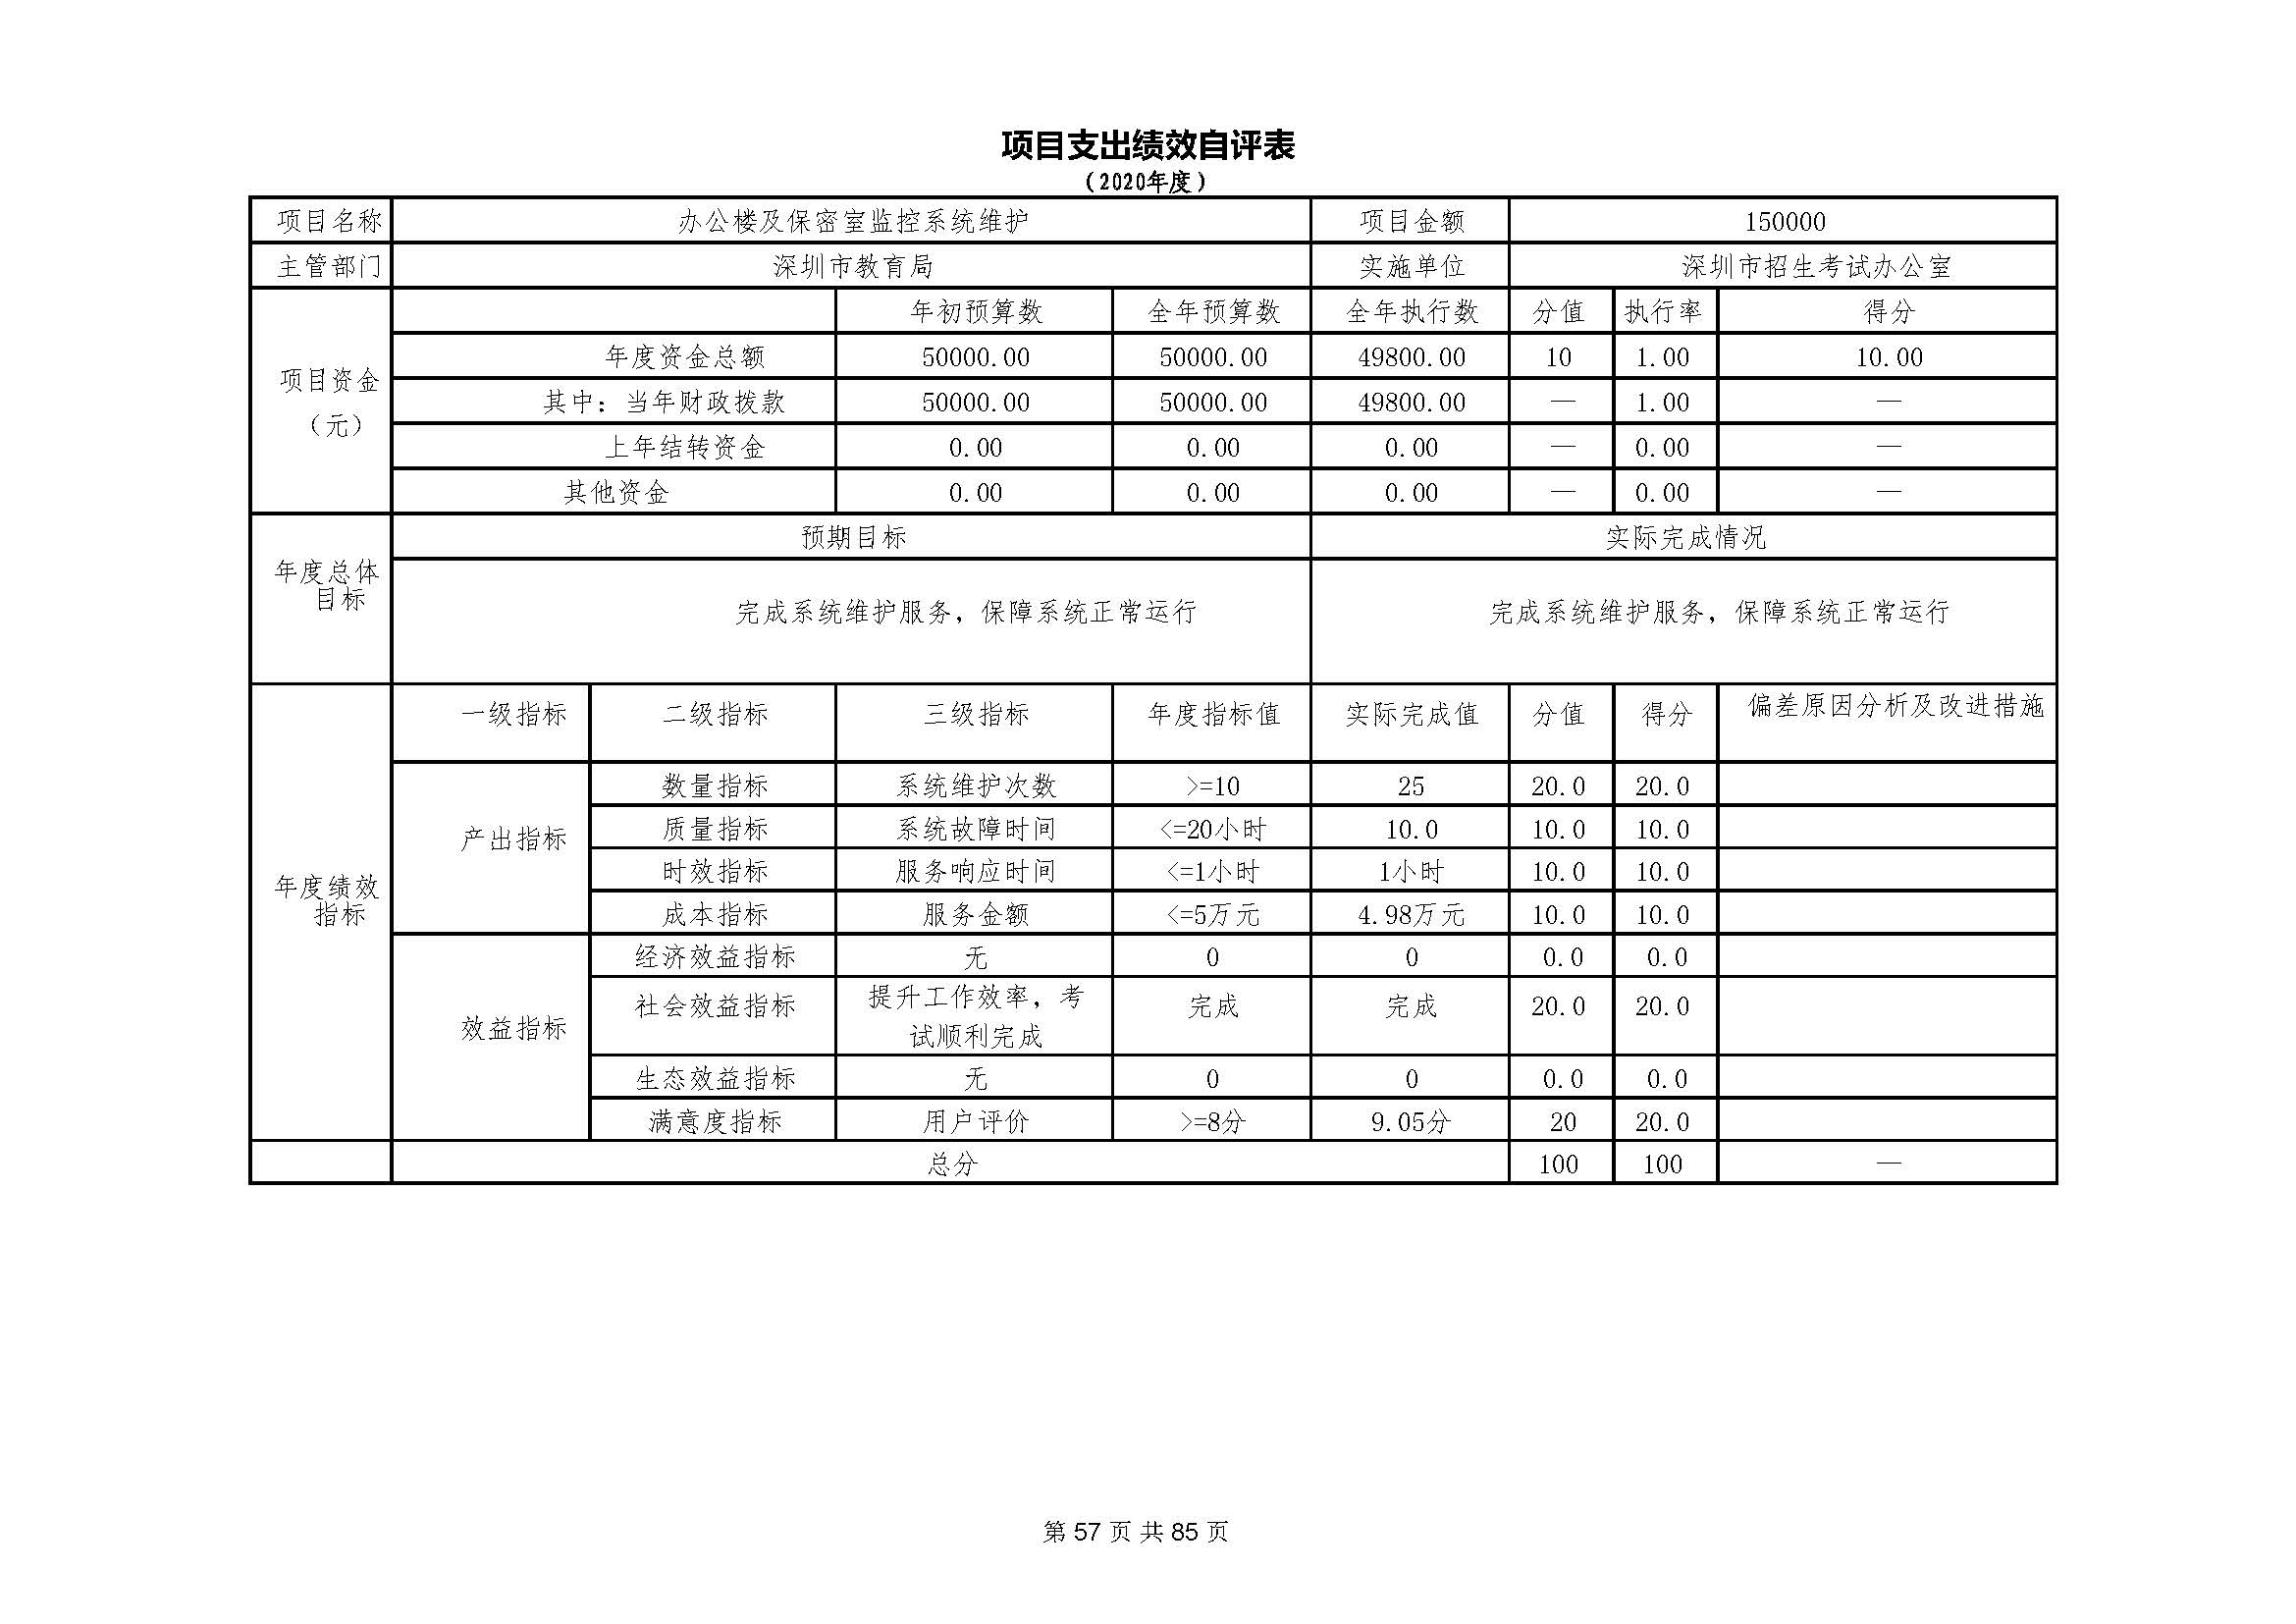 深圳市招生考试办公室2020年度部门决算_页面_58.jpg